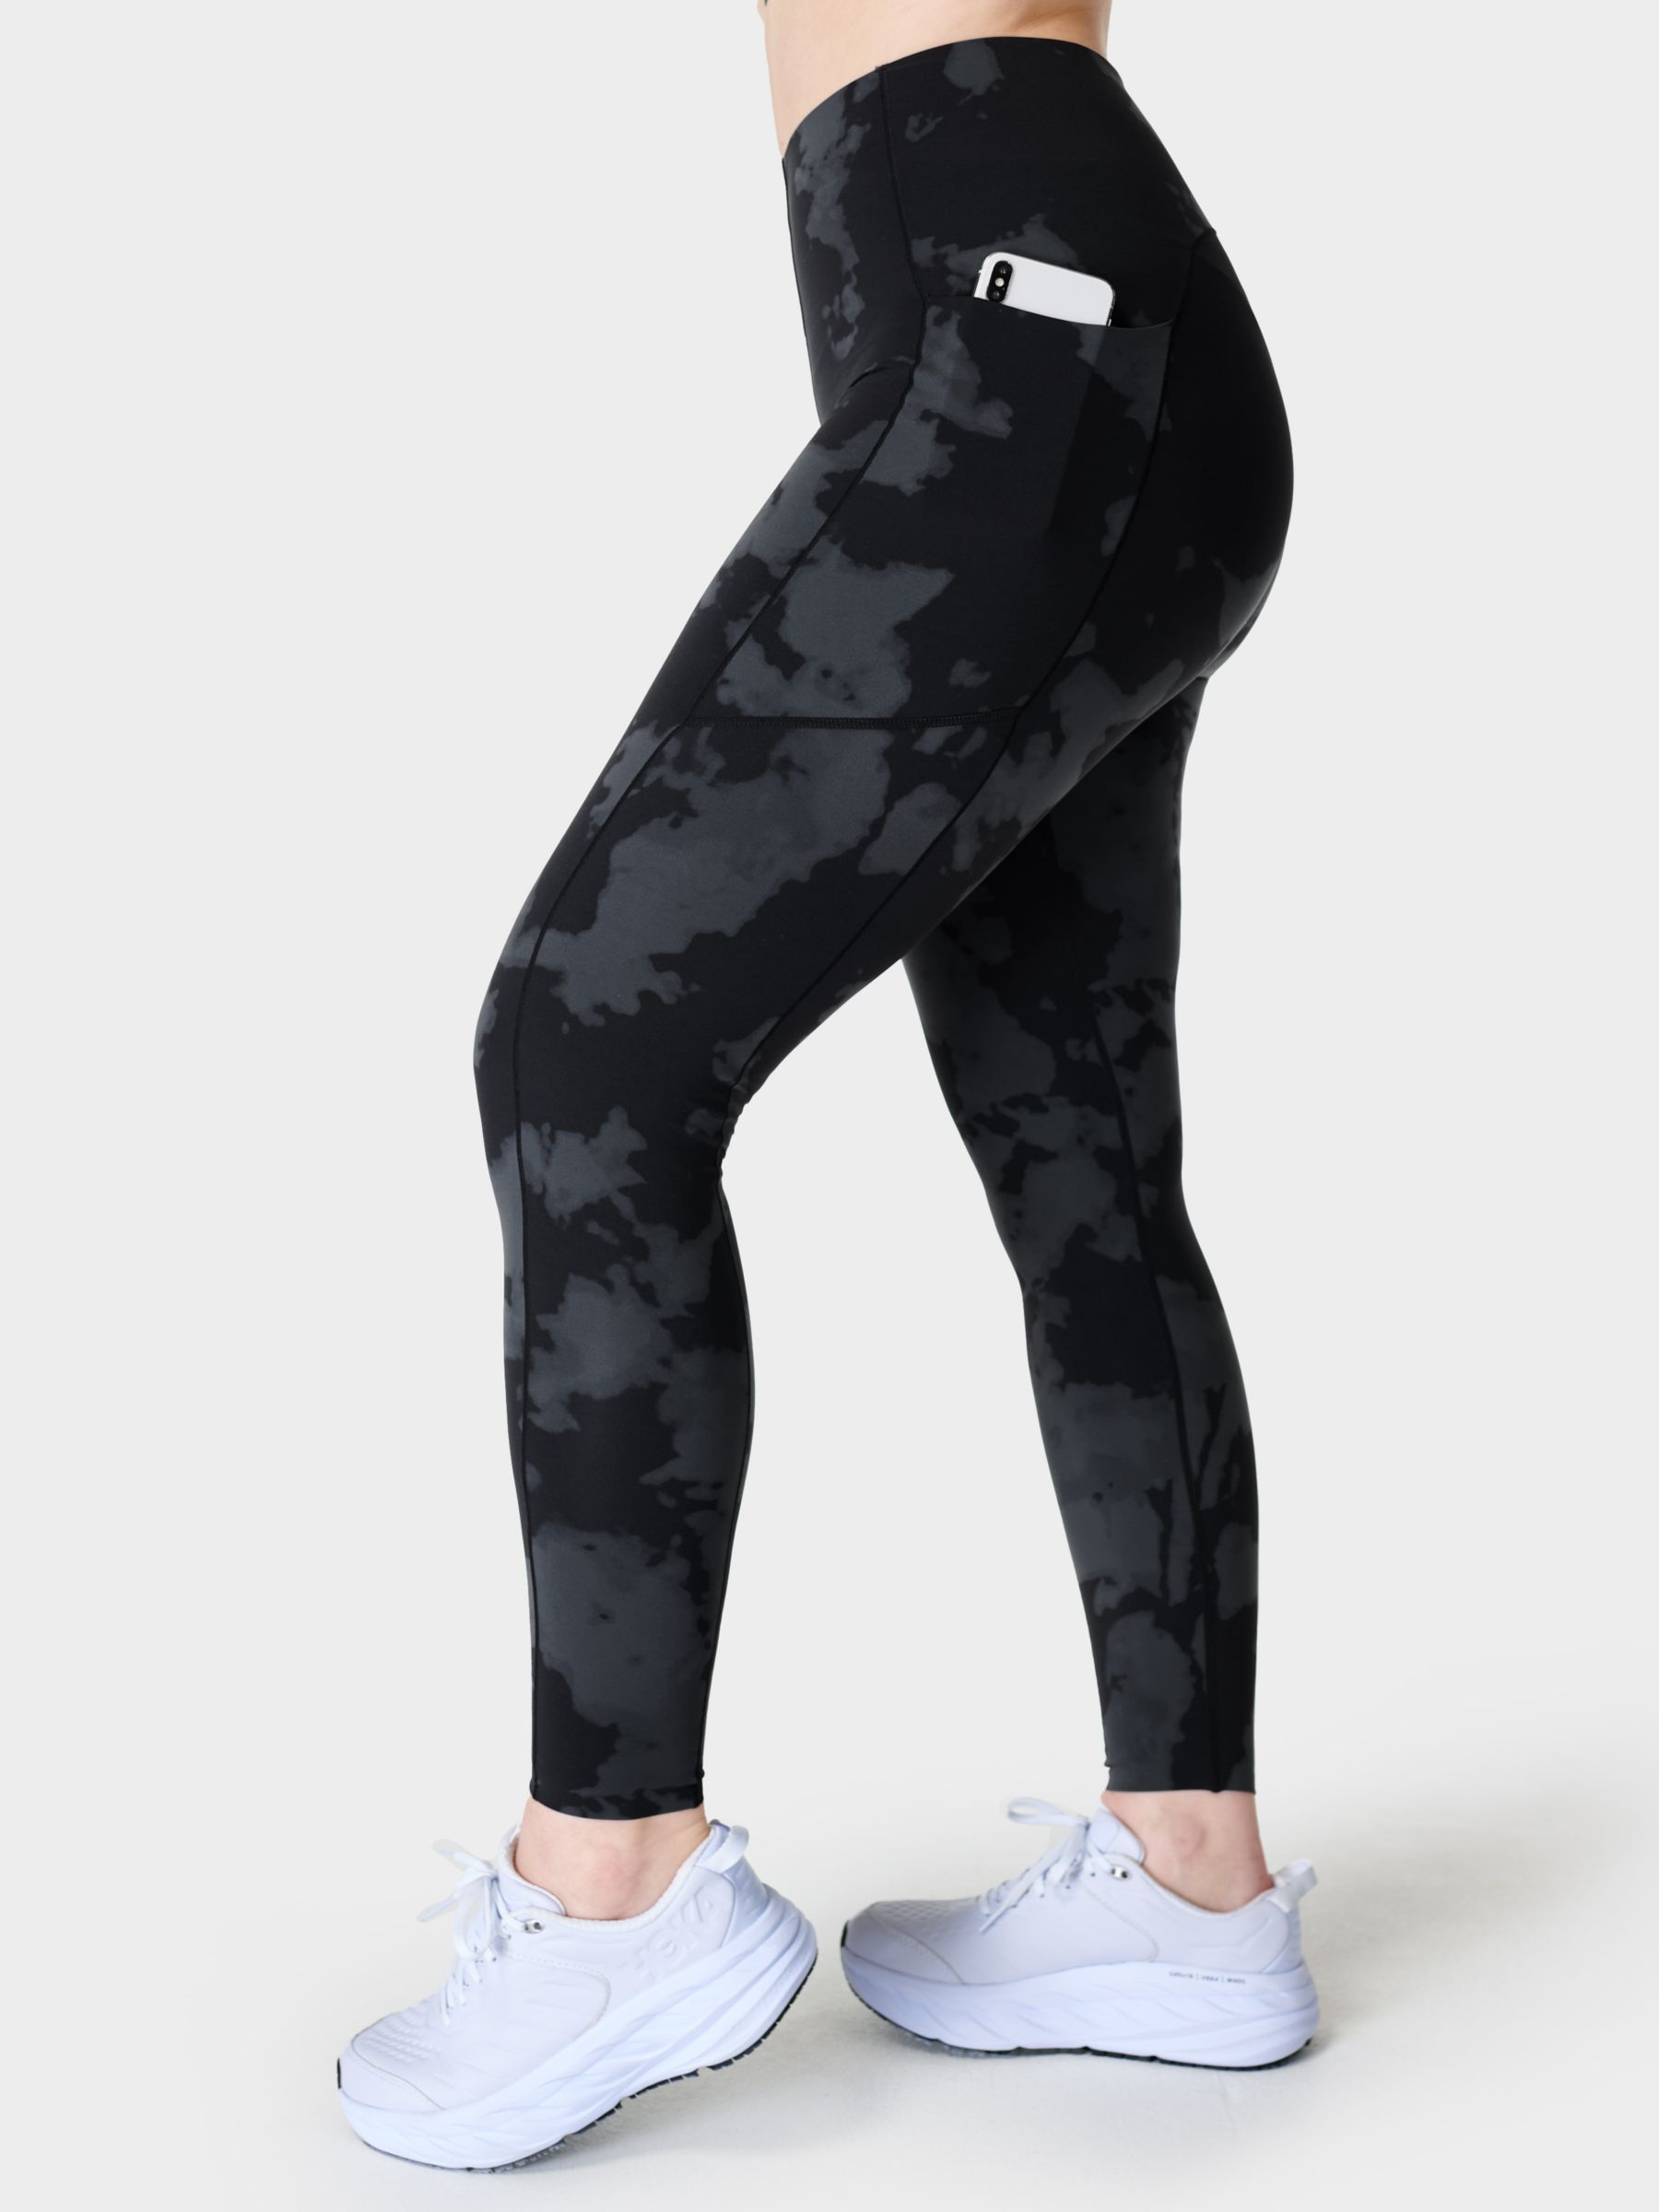 Sweaty Betty Women's Power 7/8 Workout Legging  Black workout leggings,  Gym leggings, Leggings design